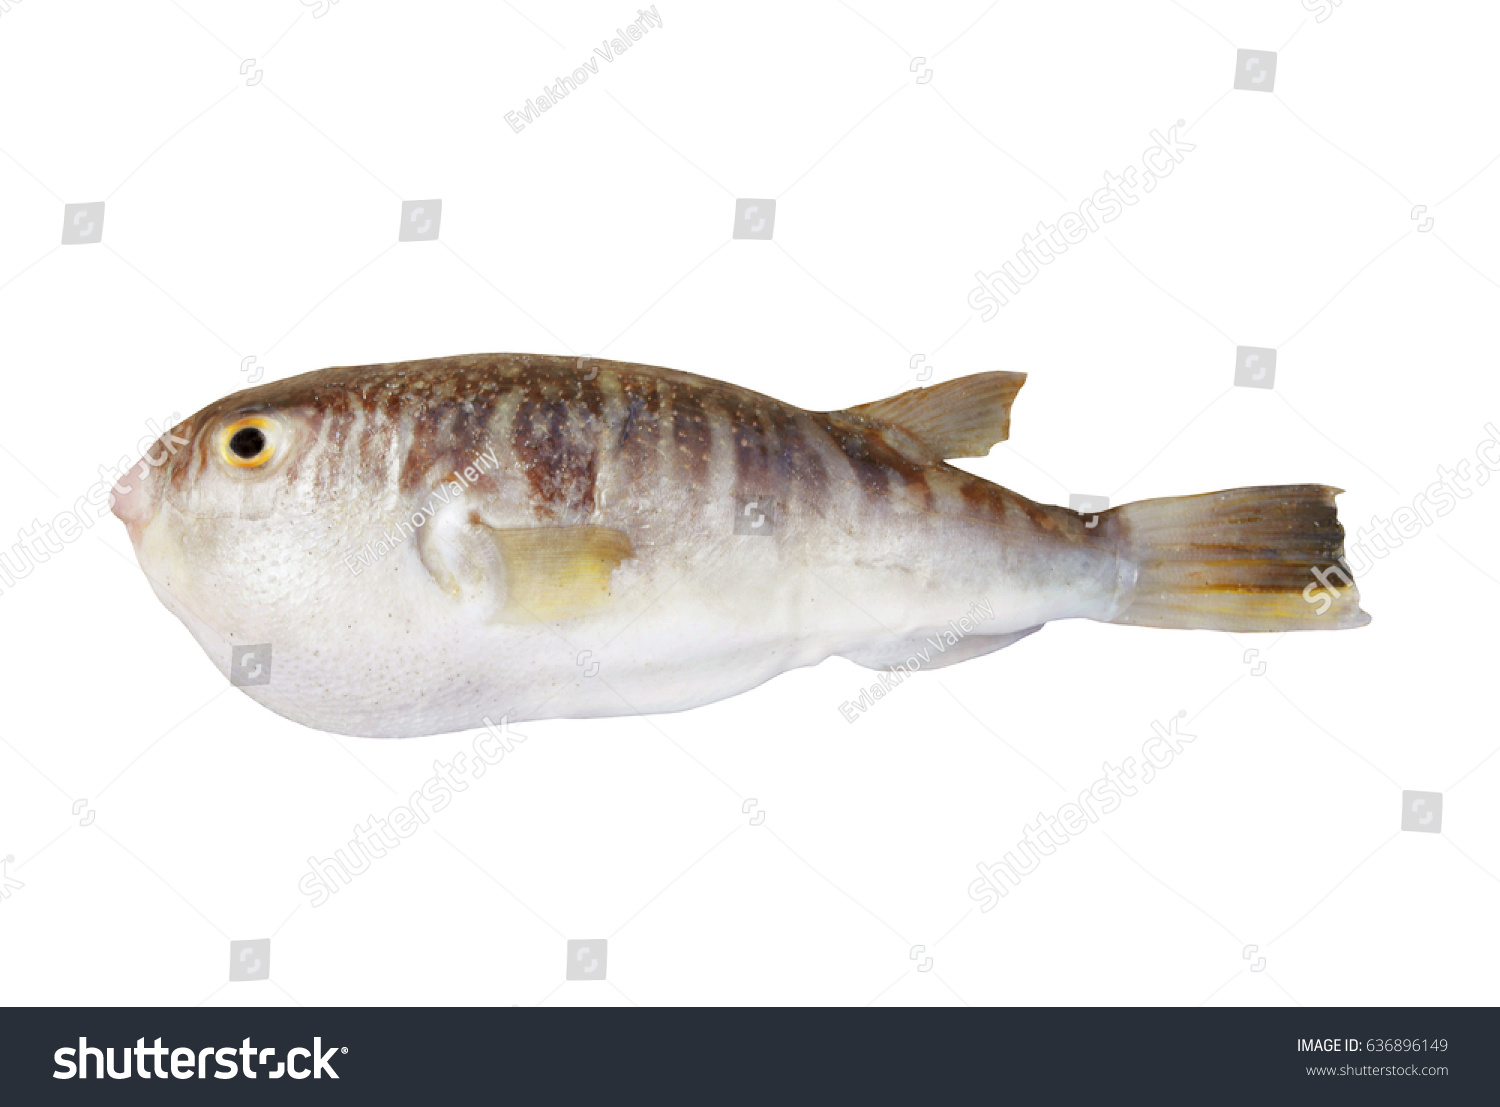 Fugu fish isolated on white background #636896149